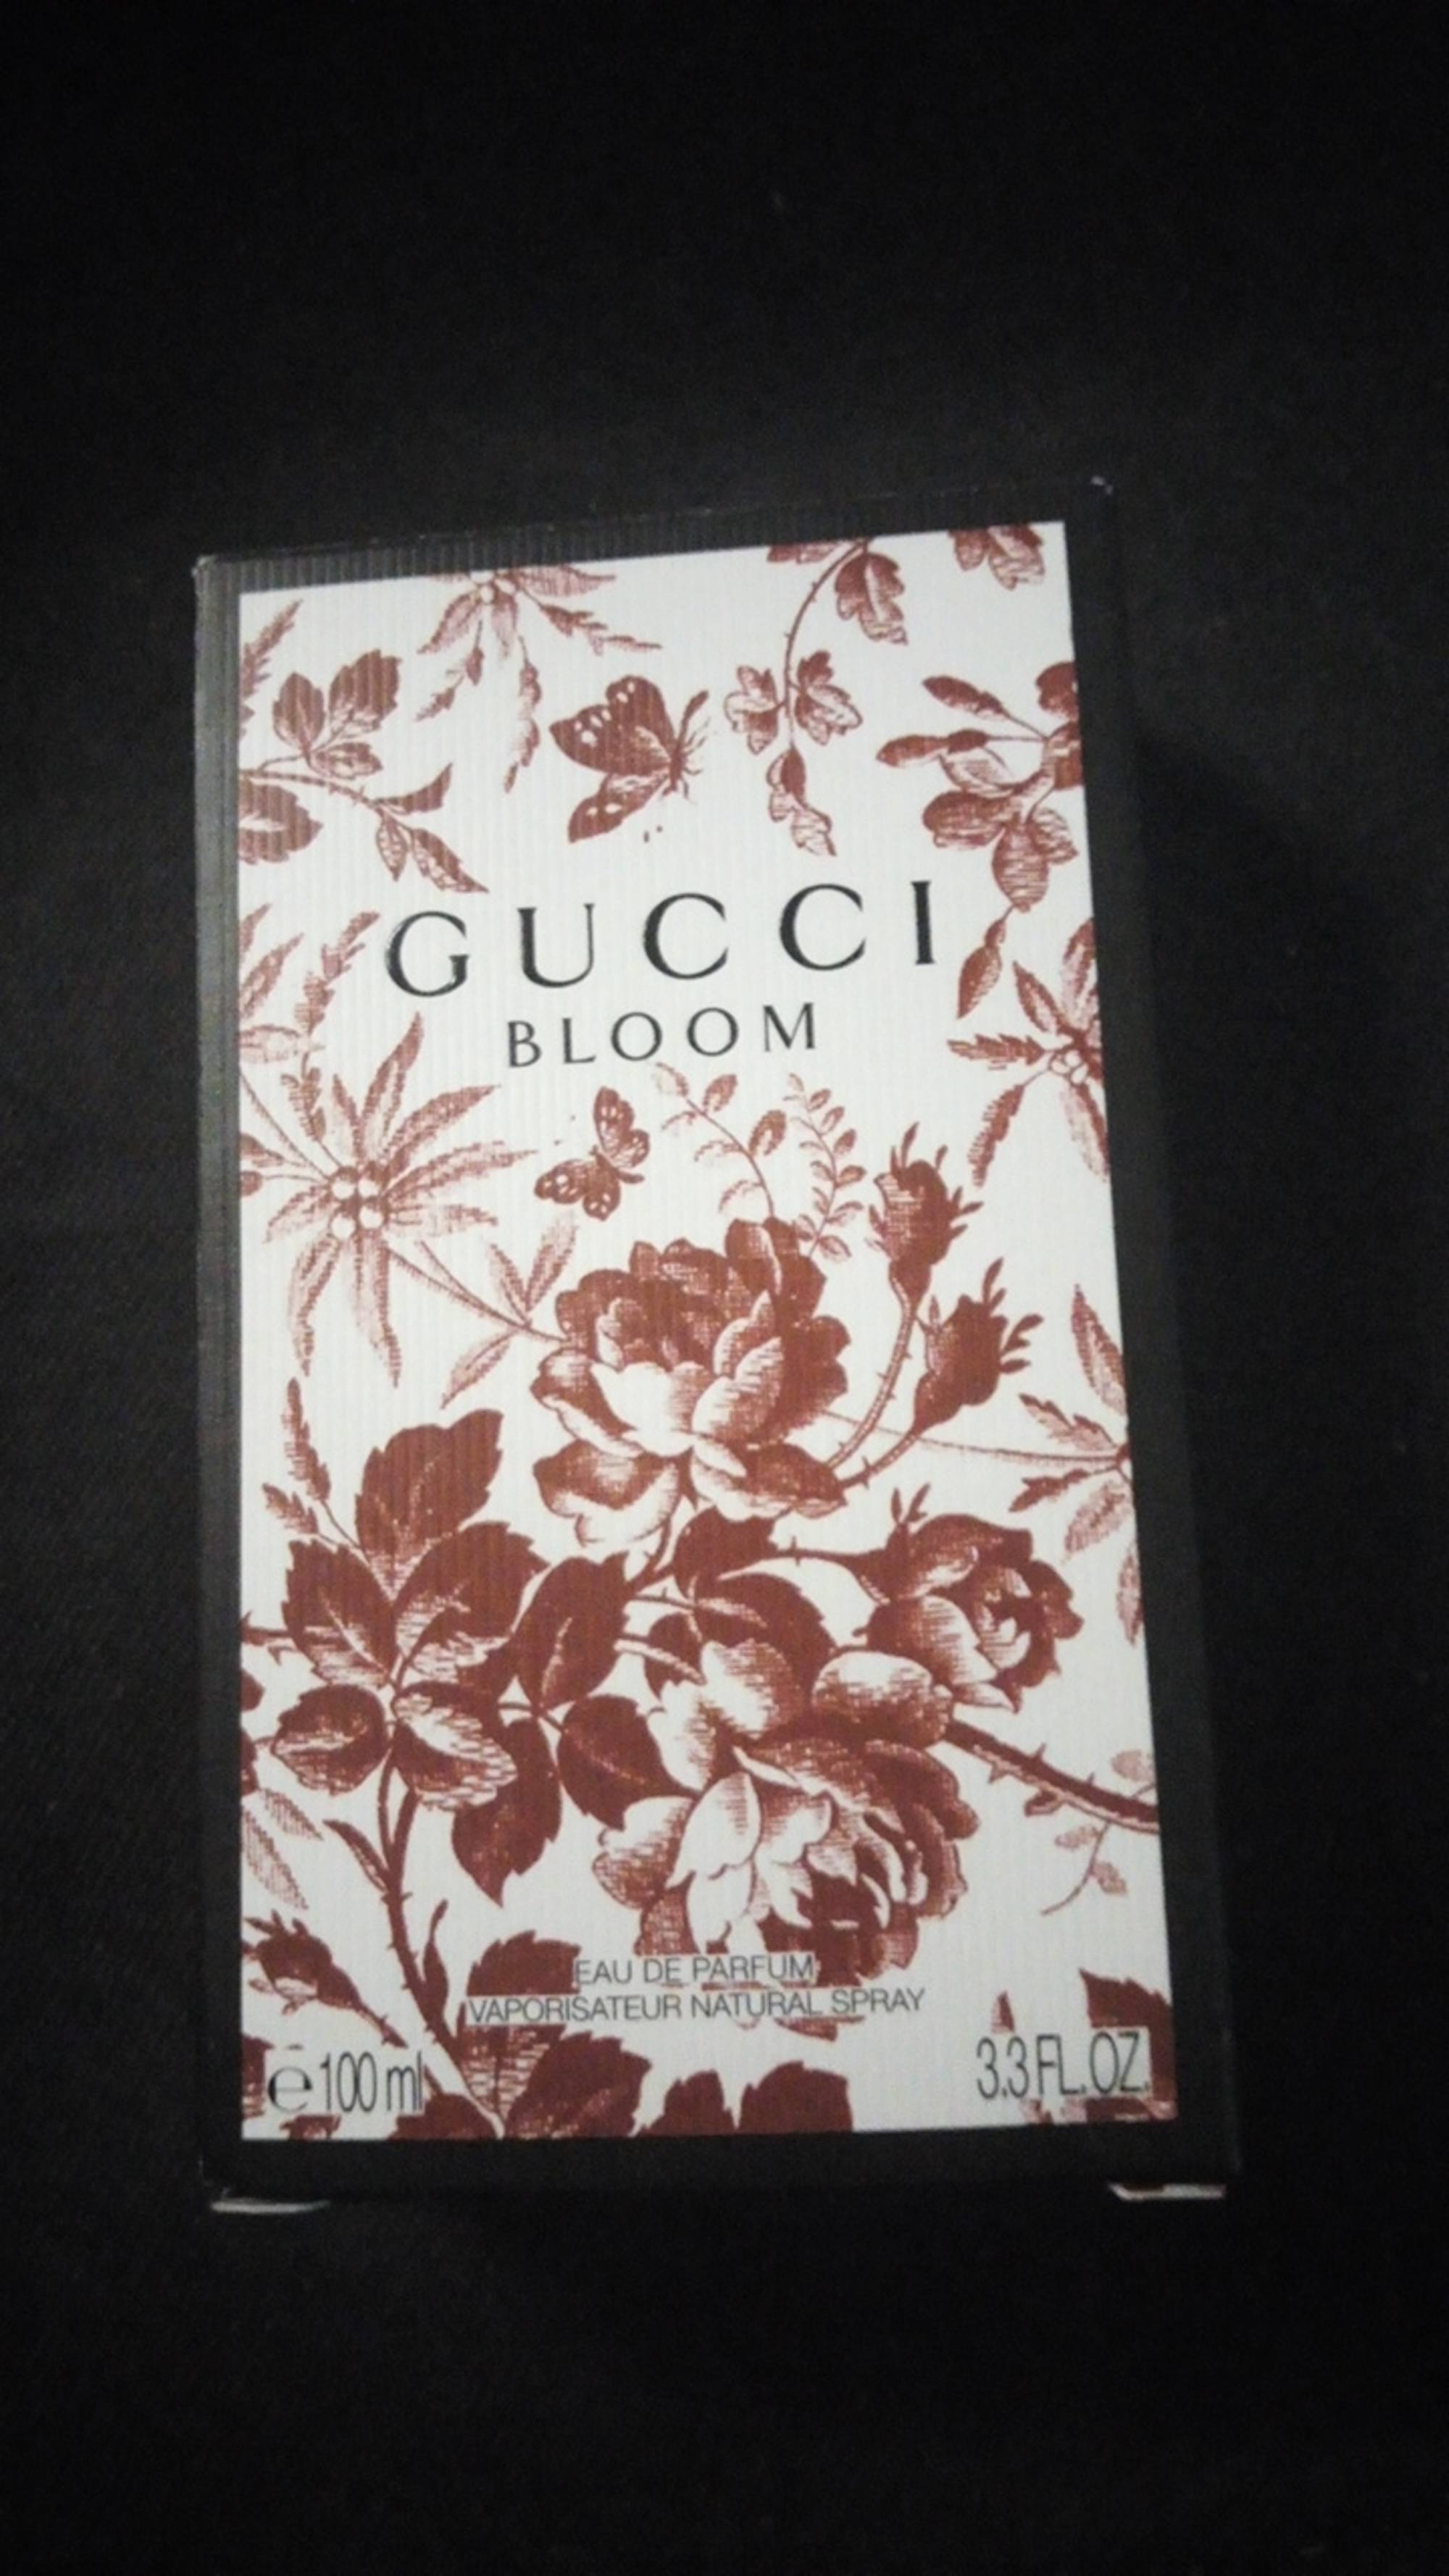 GUCCI - Bloom - Eau de parfum vaporisateur